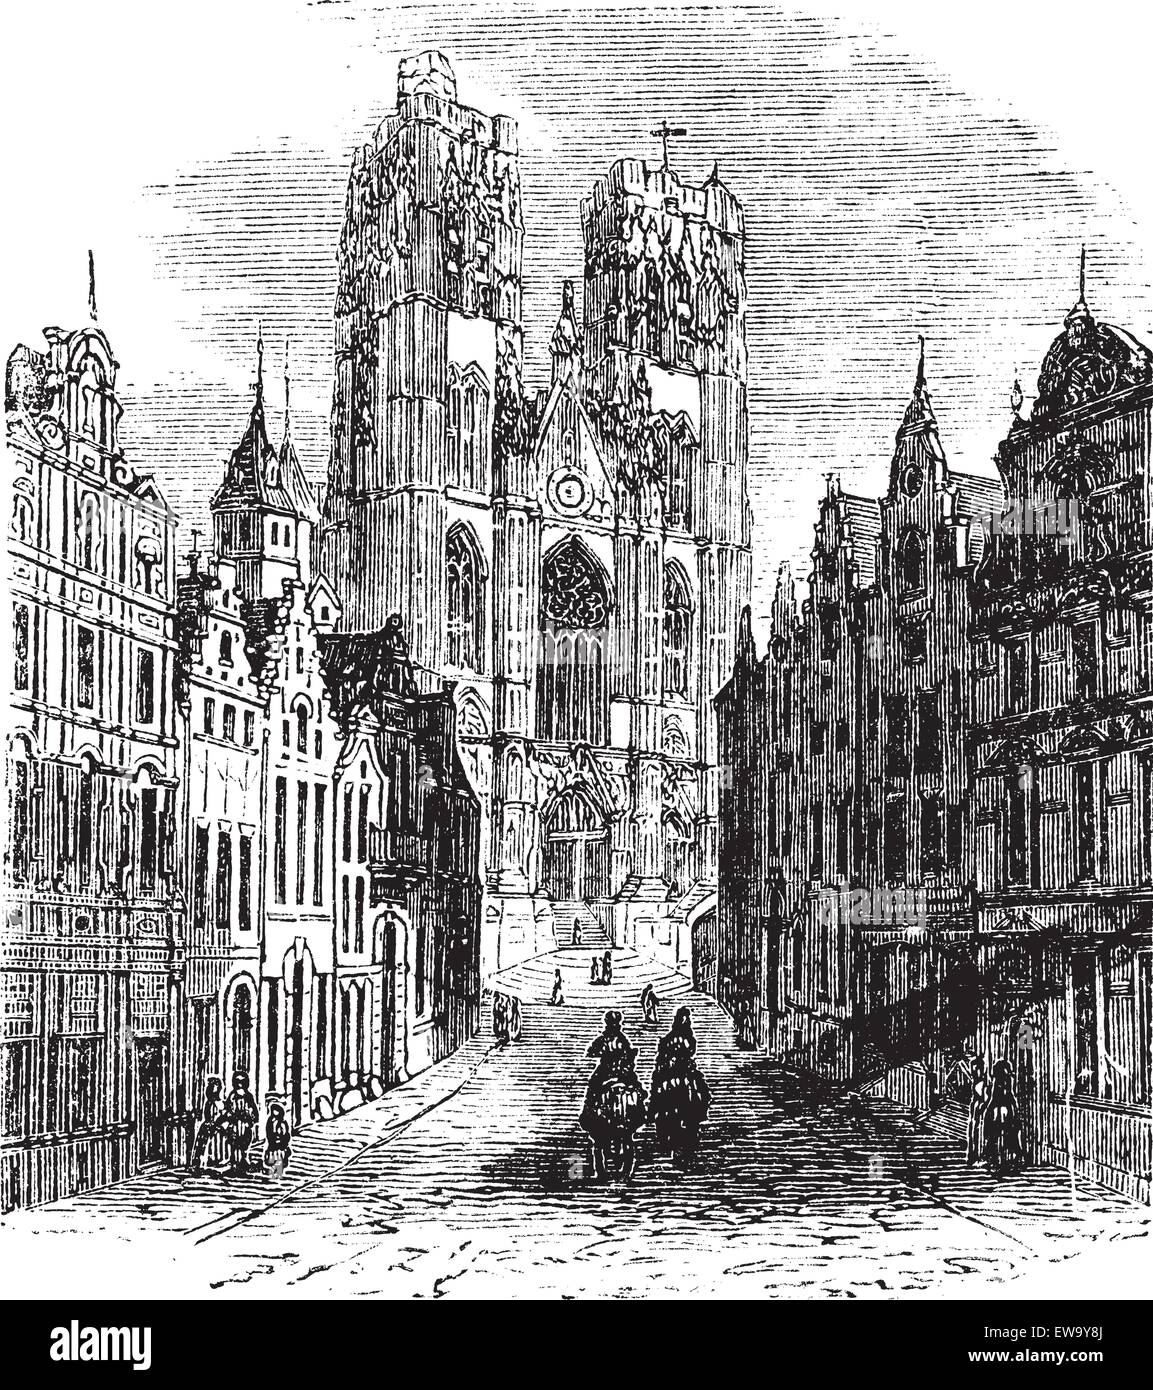 L'église de Saint-Gudula Bruxelles, Belgique. Gravure d'époque. Gravée ancienne illustration d'une église catholique à l'Tre Illustration de Vecteur